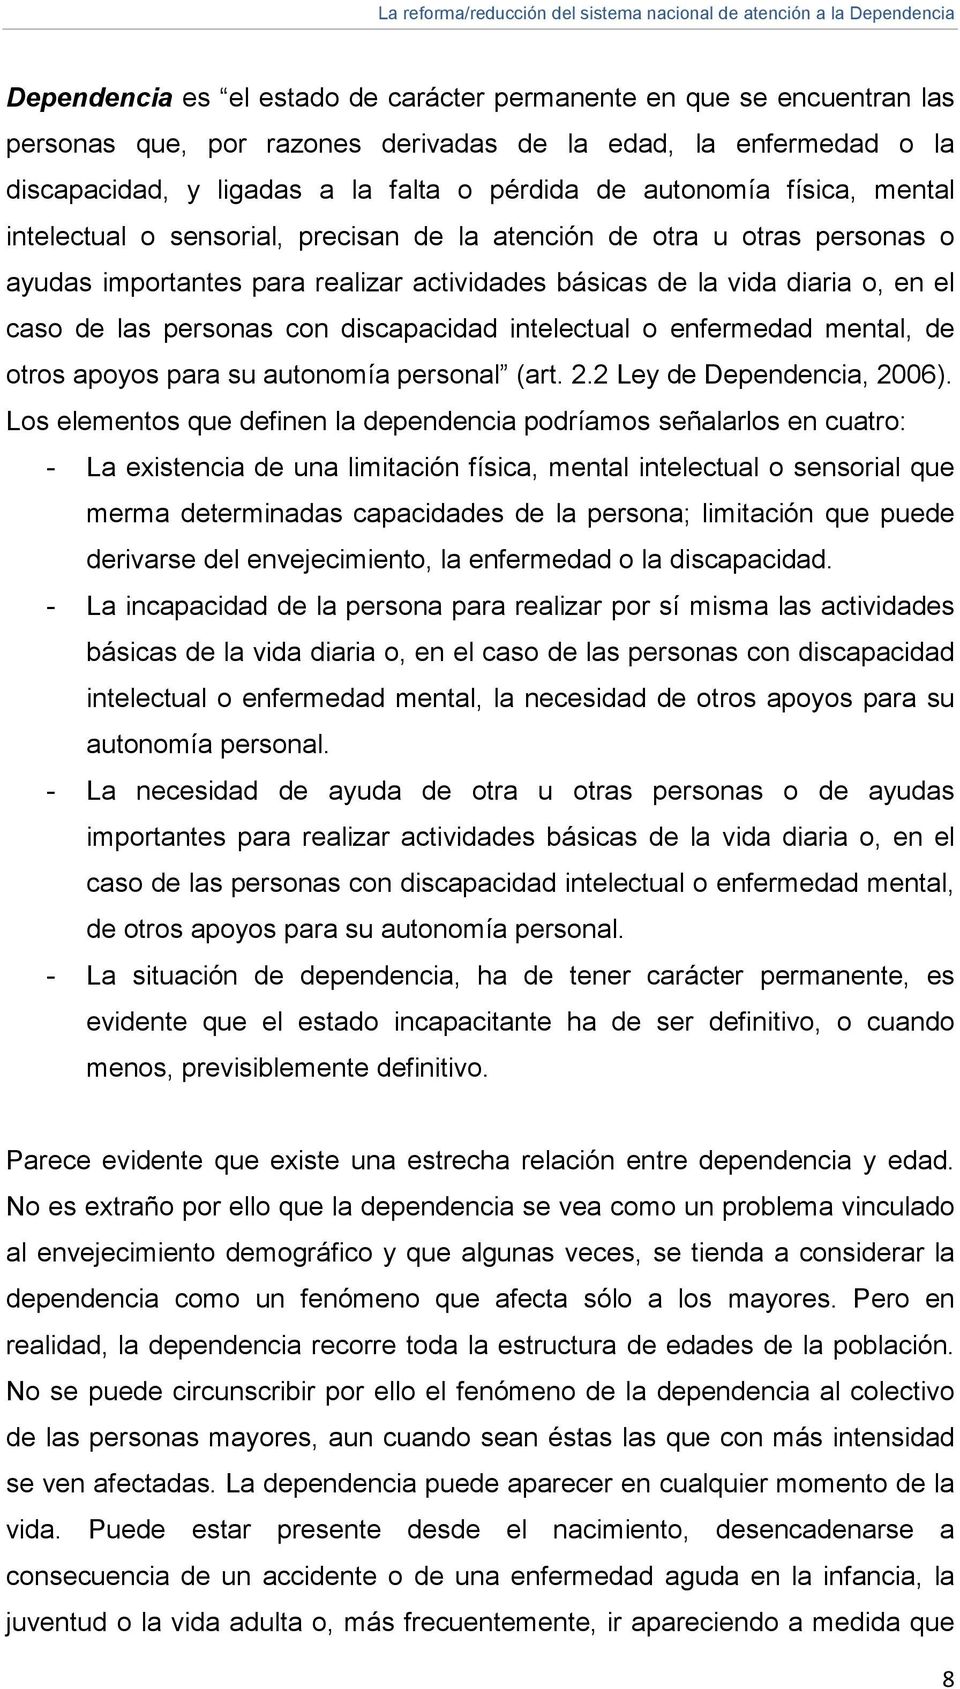 discapacidad intelectual o enfermedad mental, de otros apoyos para su autonomía personal (art. 2.2 Ley de Dependencia, 2006).